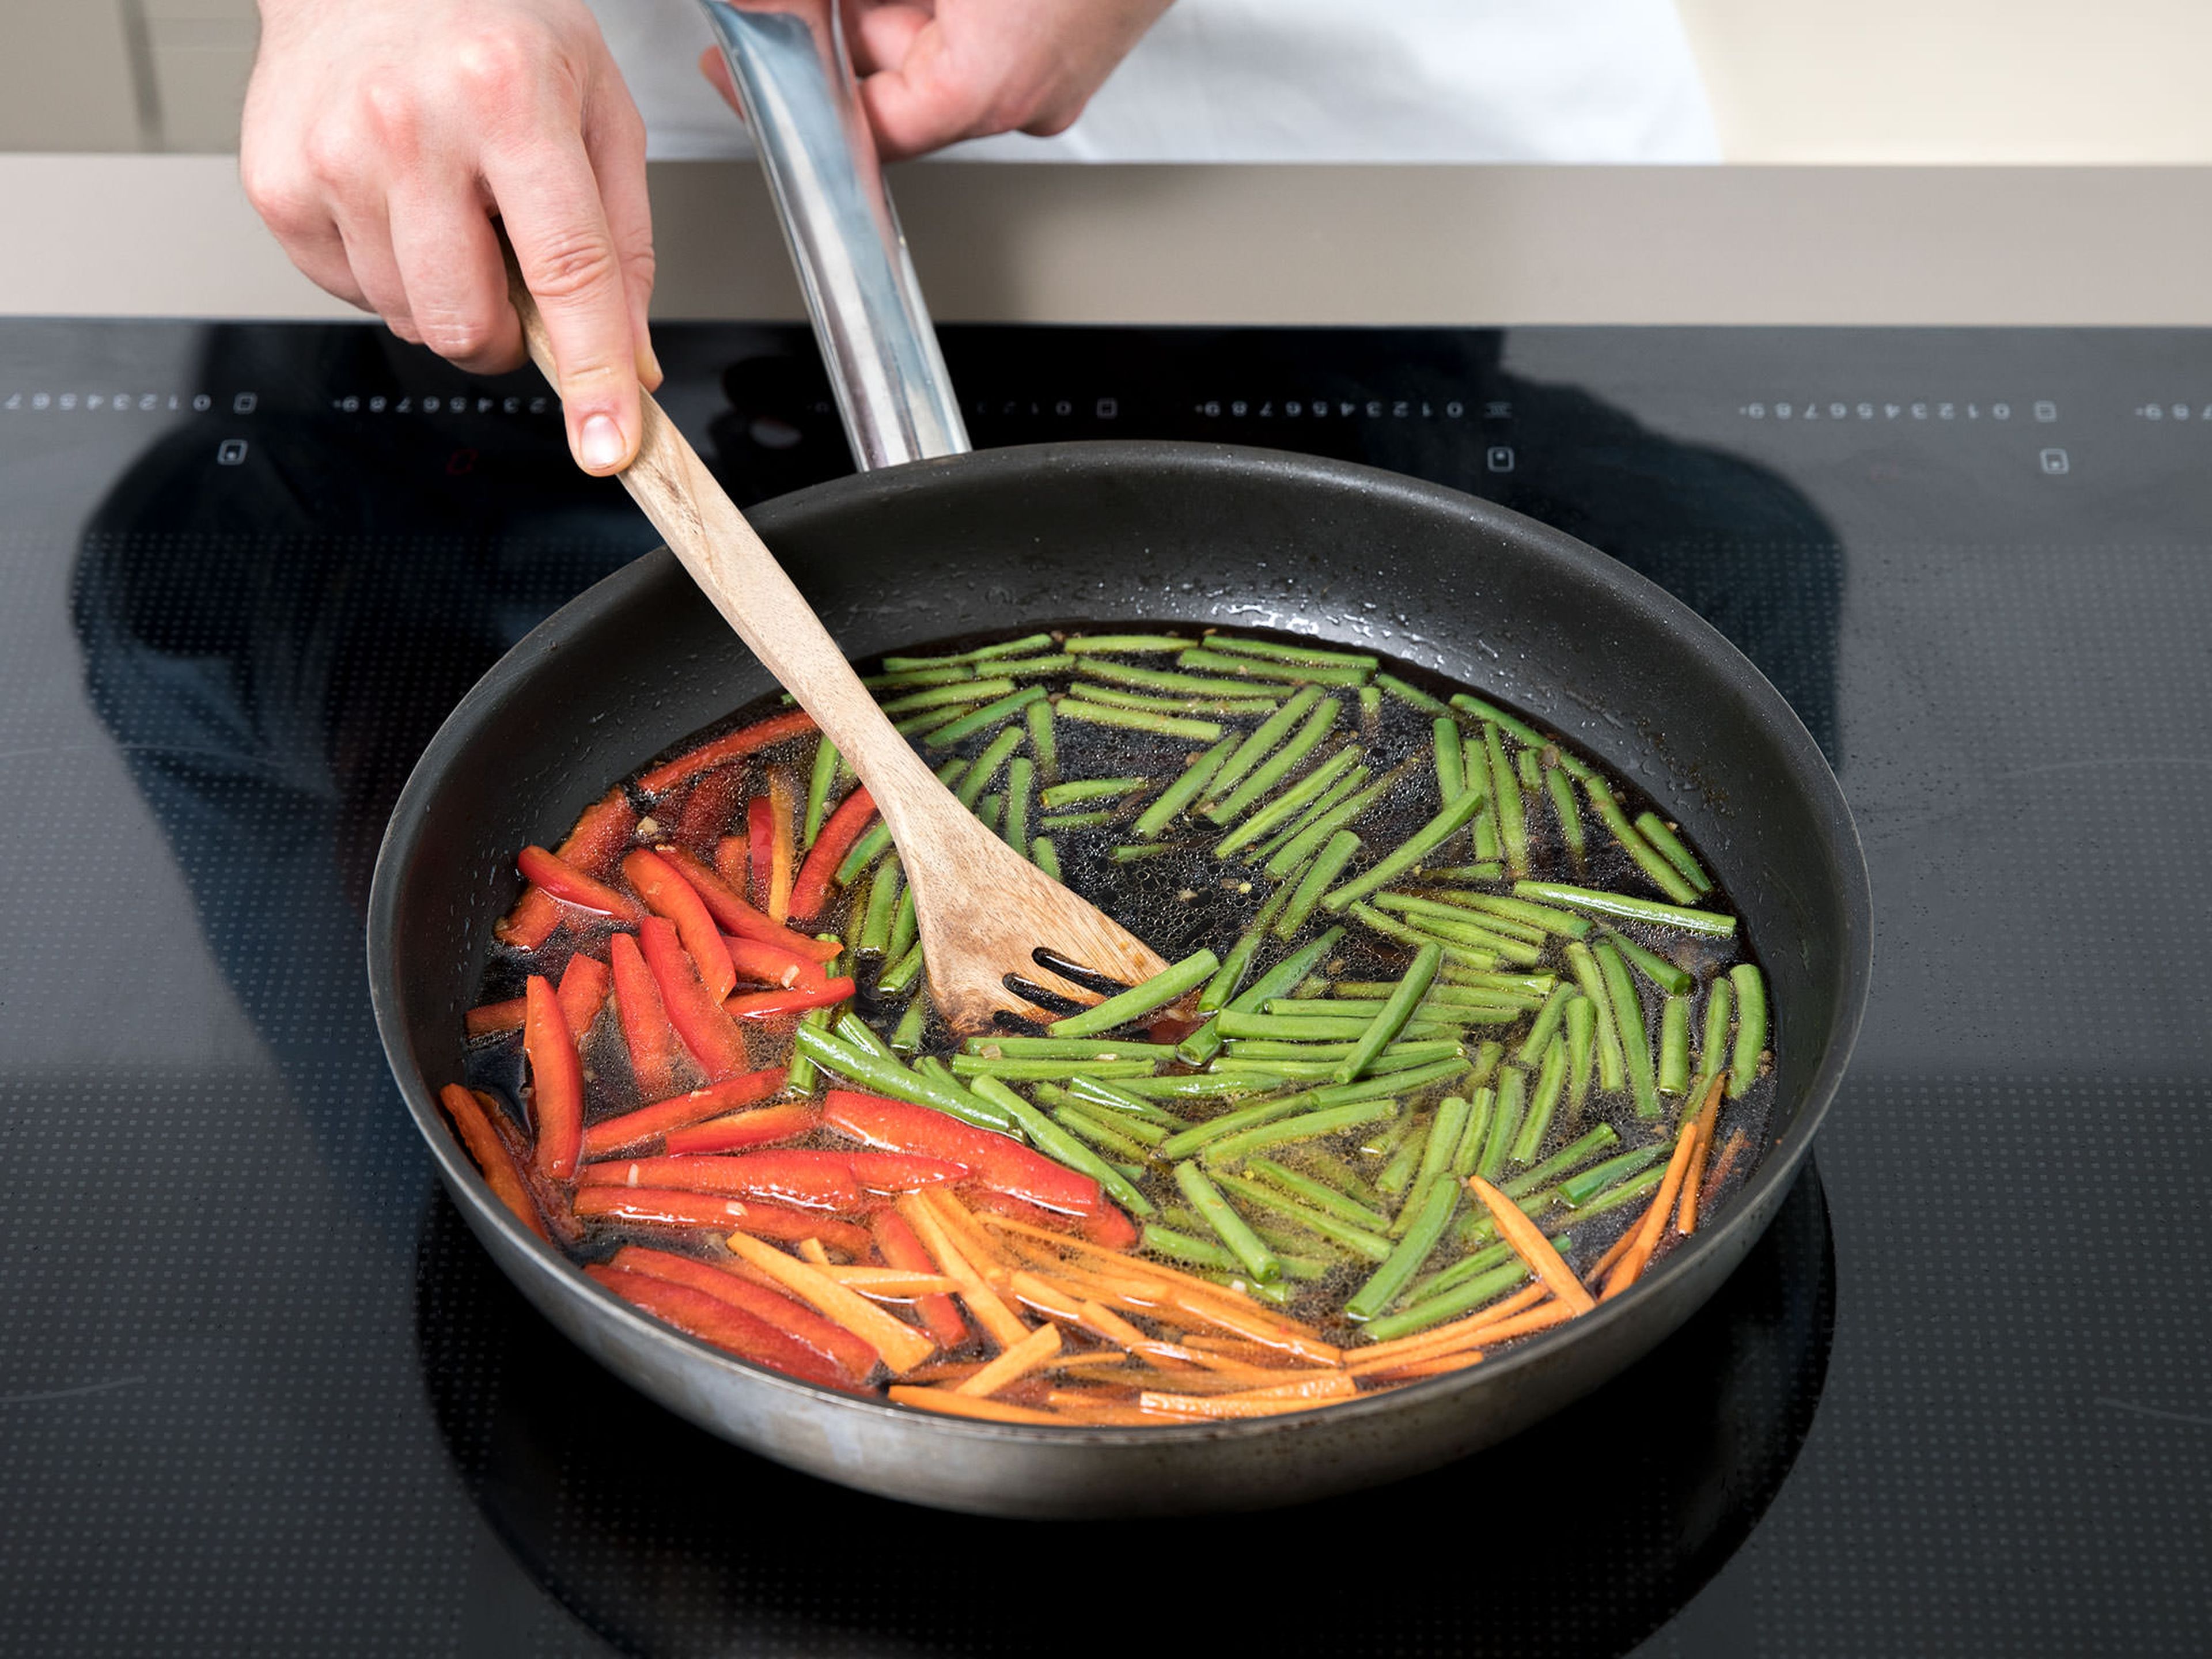 Wasser in den Work geben und aufkochen lassen. Gemüse hinzufügen und bei starker Hitze ca. 3 Min. kochen. Dann das Hähnchen zurück in die Pfanne geben und nochmal ca. 5 Min. köcheln. Nach Bedarf mit Speisesärke andicken.